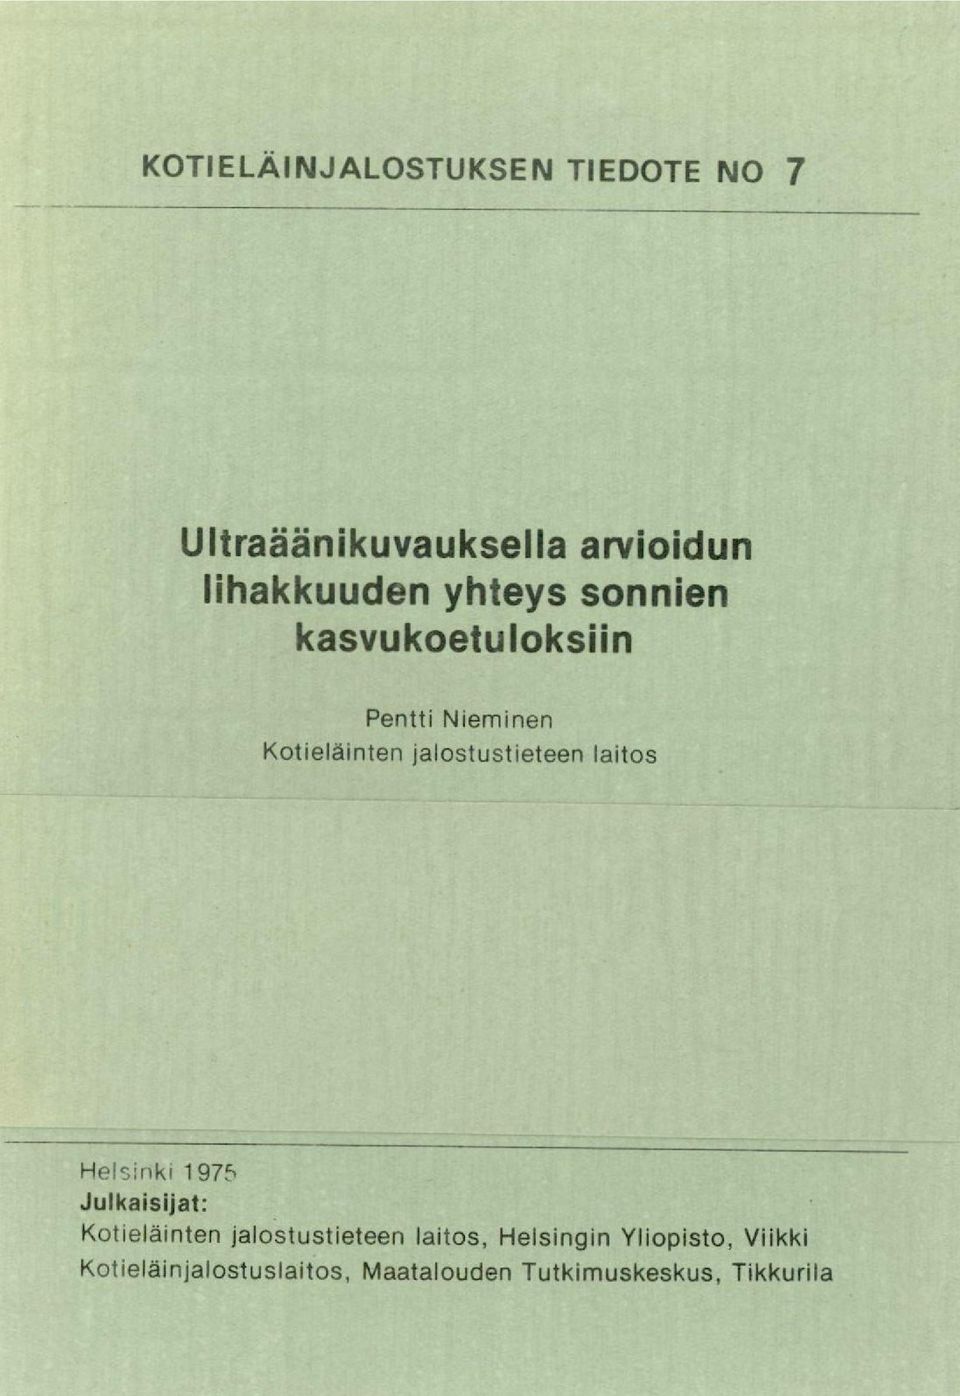 laitos Helsinki 197f, Julkaisijat: Kotieläinten jalostustieteen laitos,